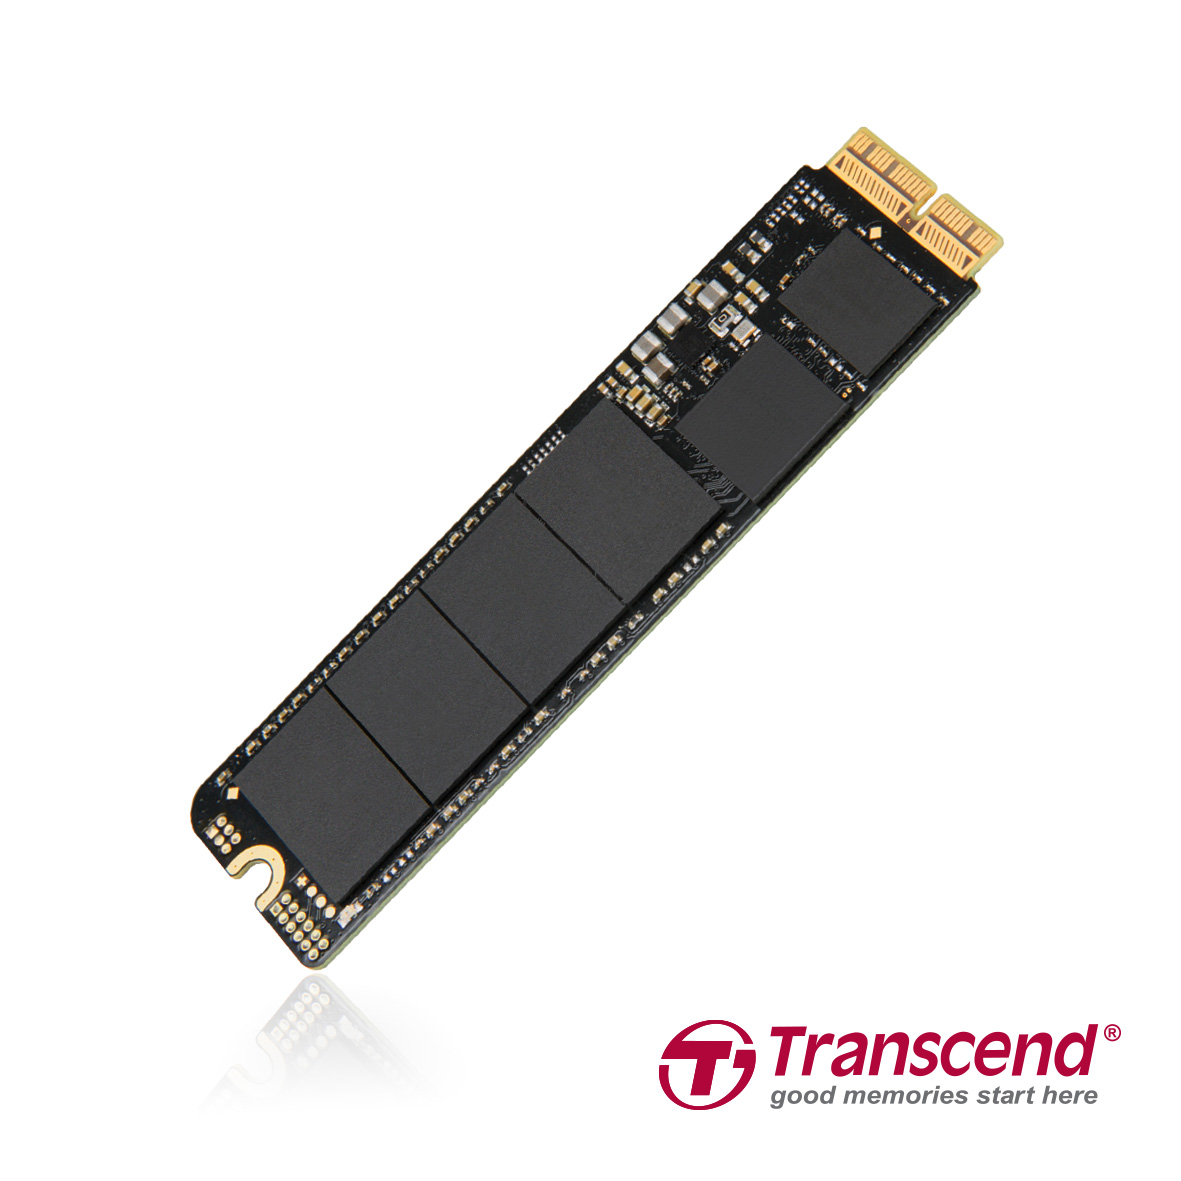 Transcend представляет скоростные твердотельные накопители JetDrive 820 для компьютеров Mac с интерфейсом PCIe